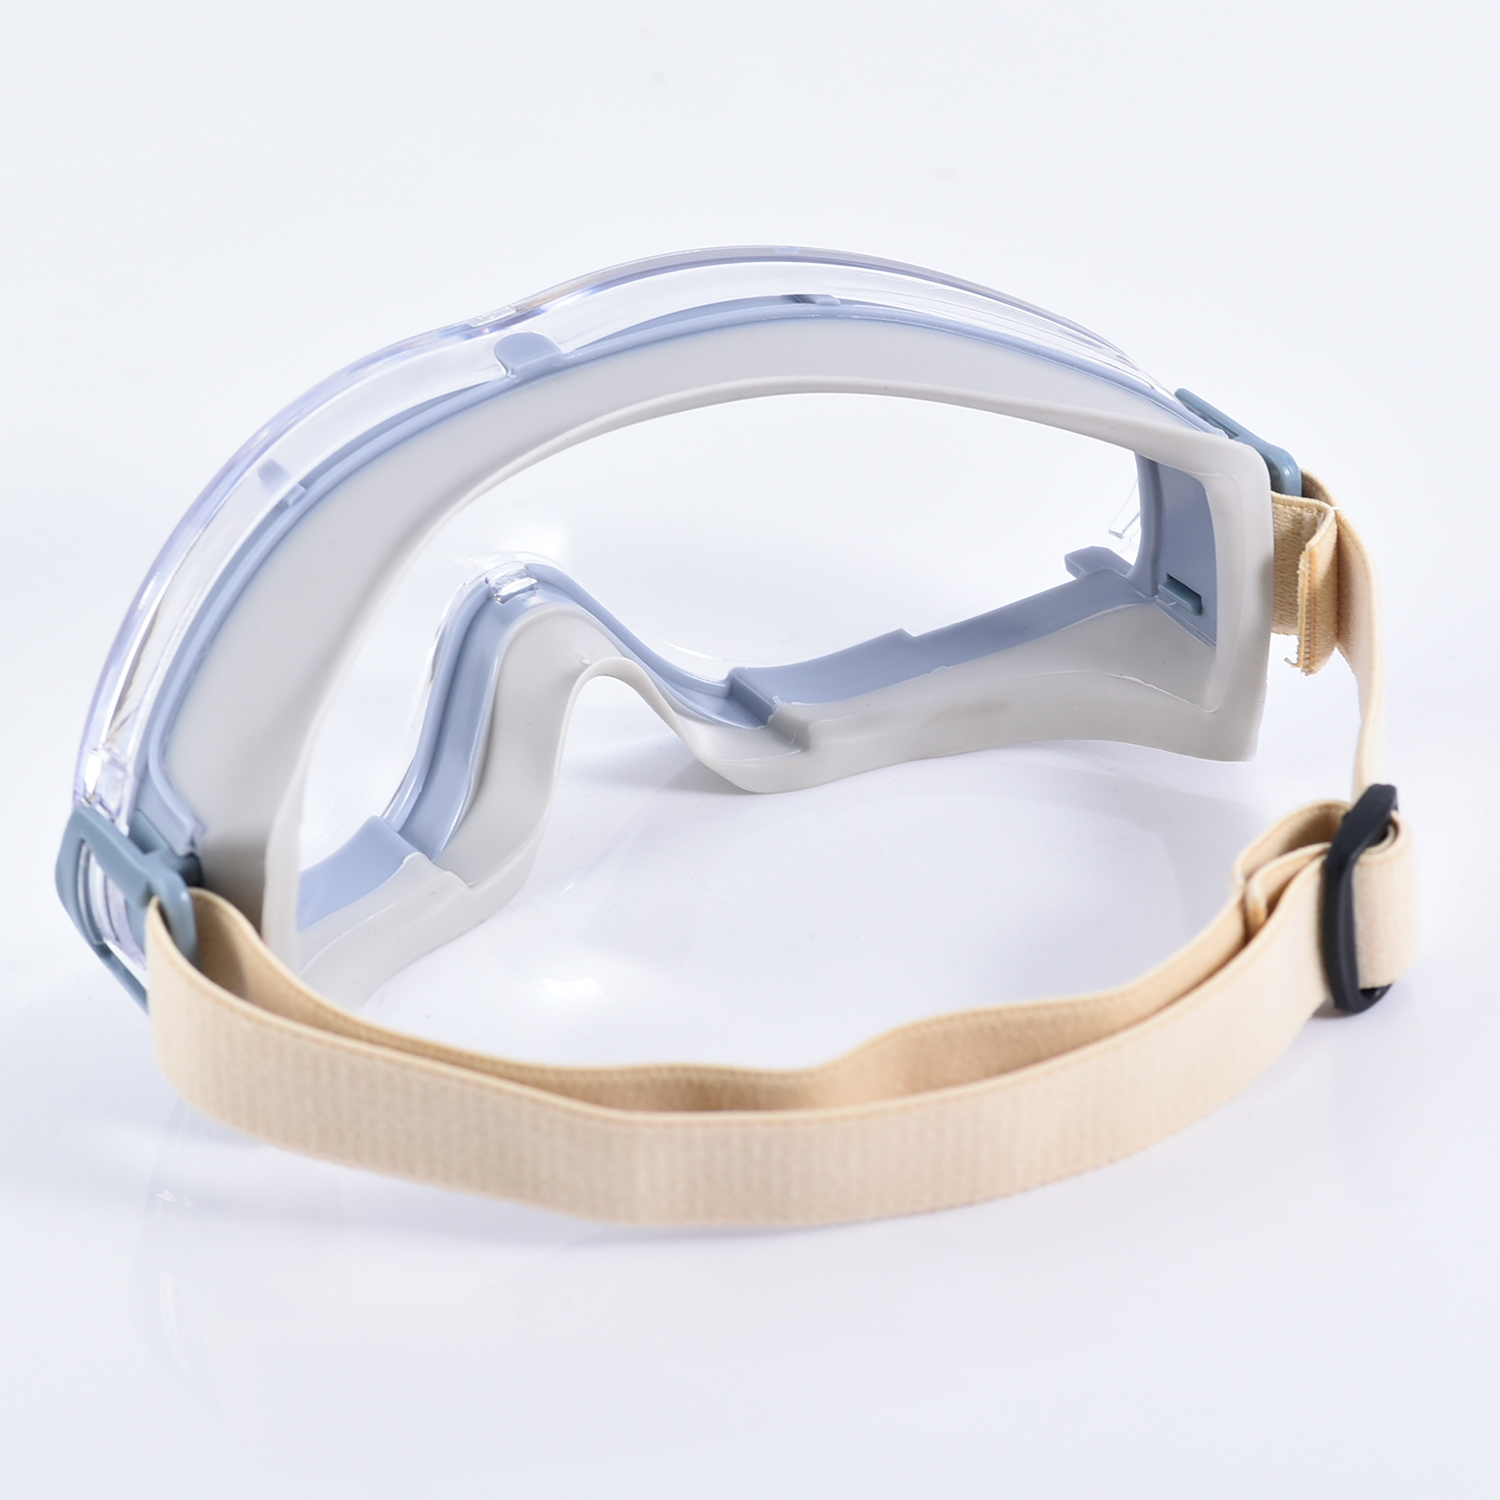 Construction Eye Safety Goggles KS504 Grey